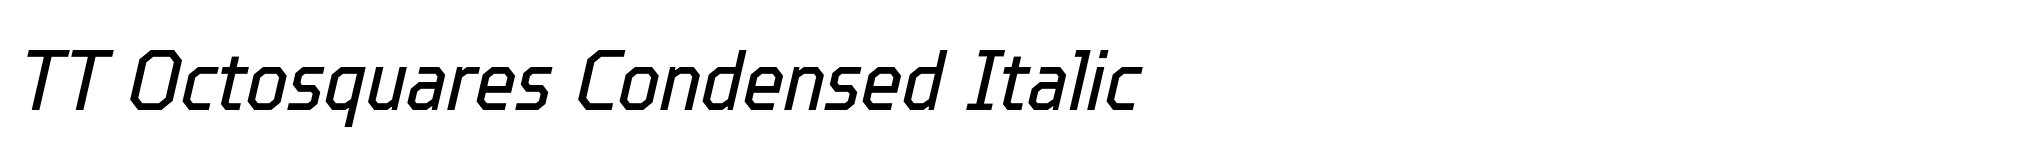 TT Octosquares Condensed Italic image